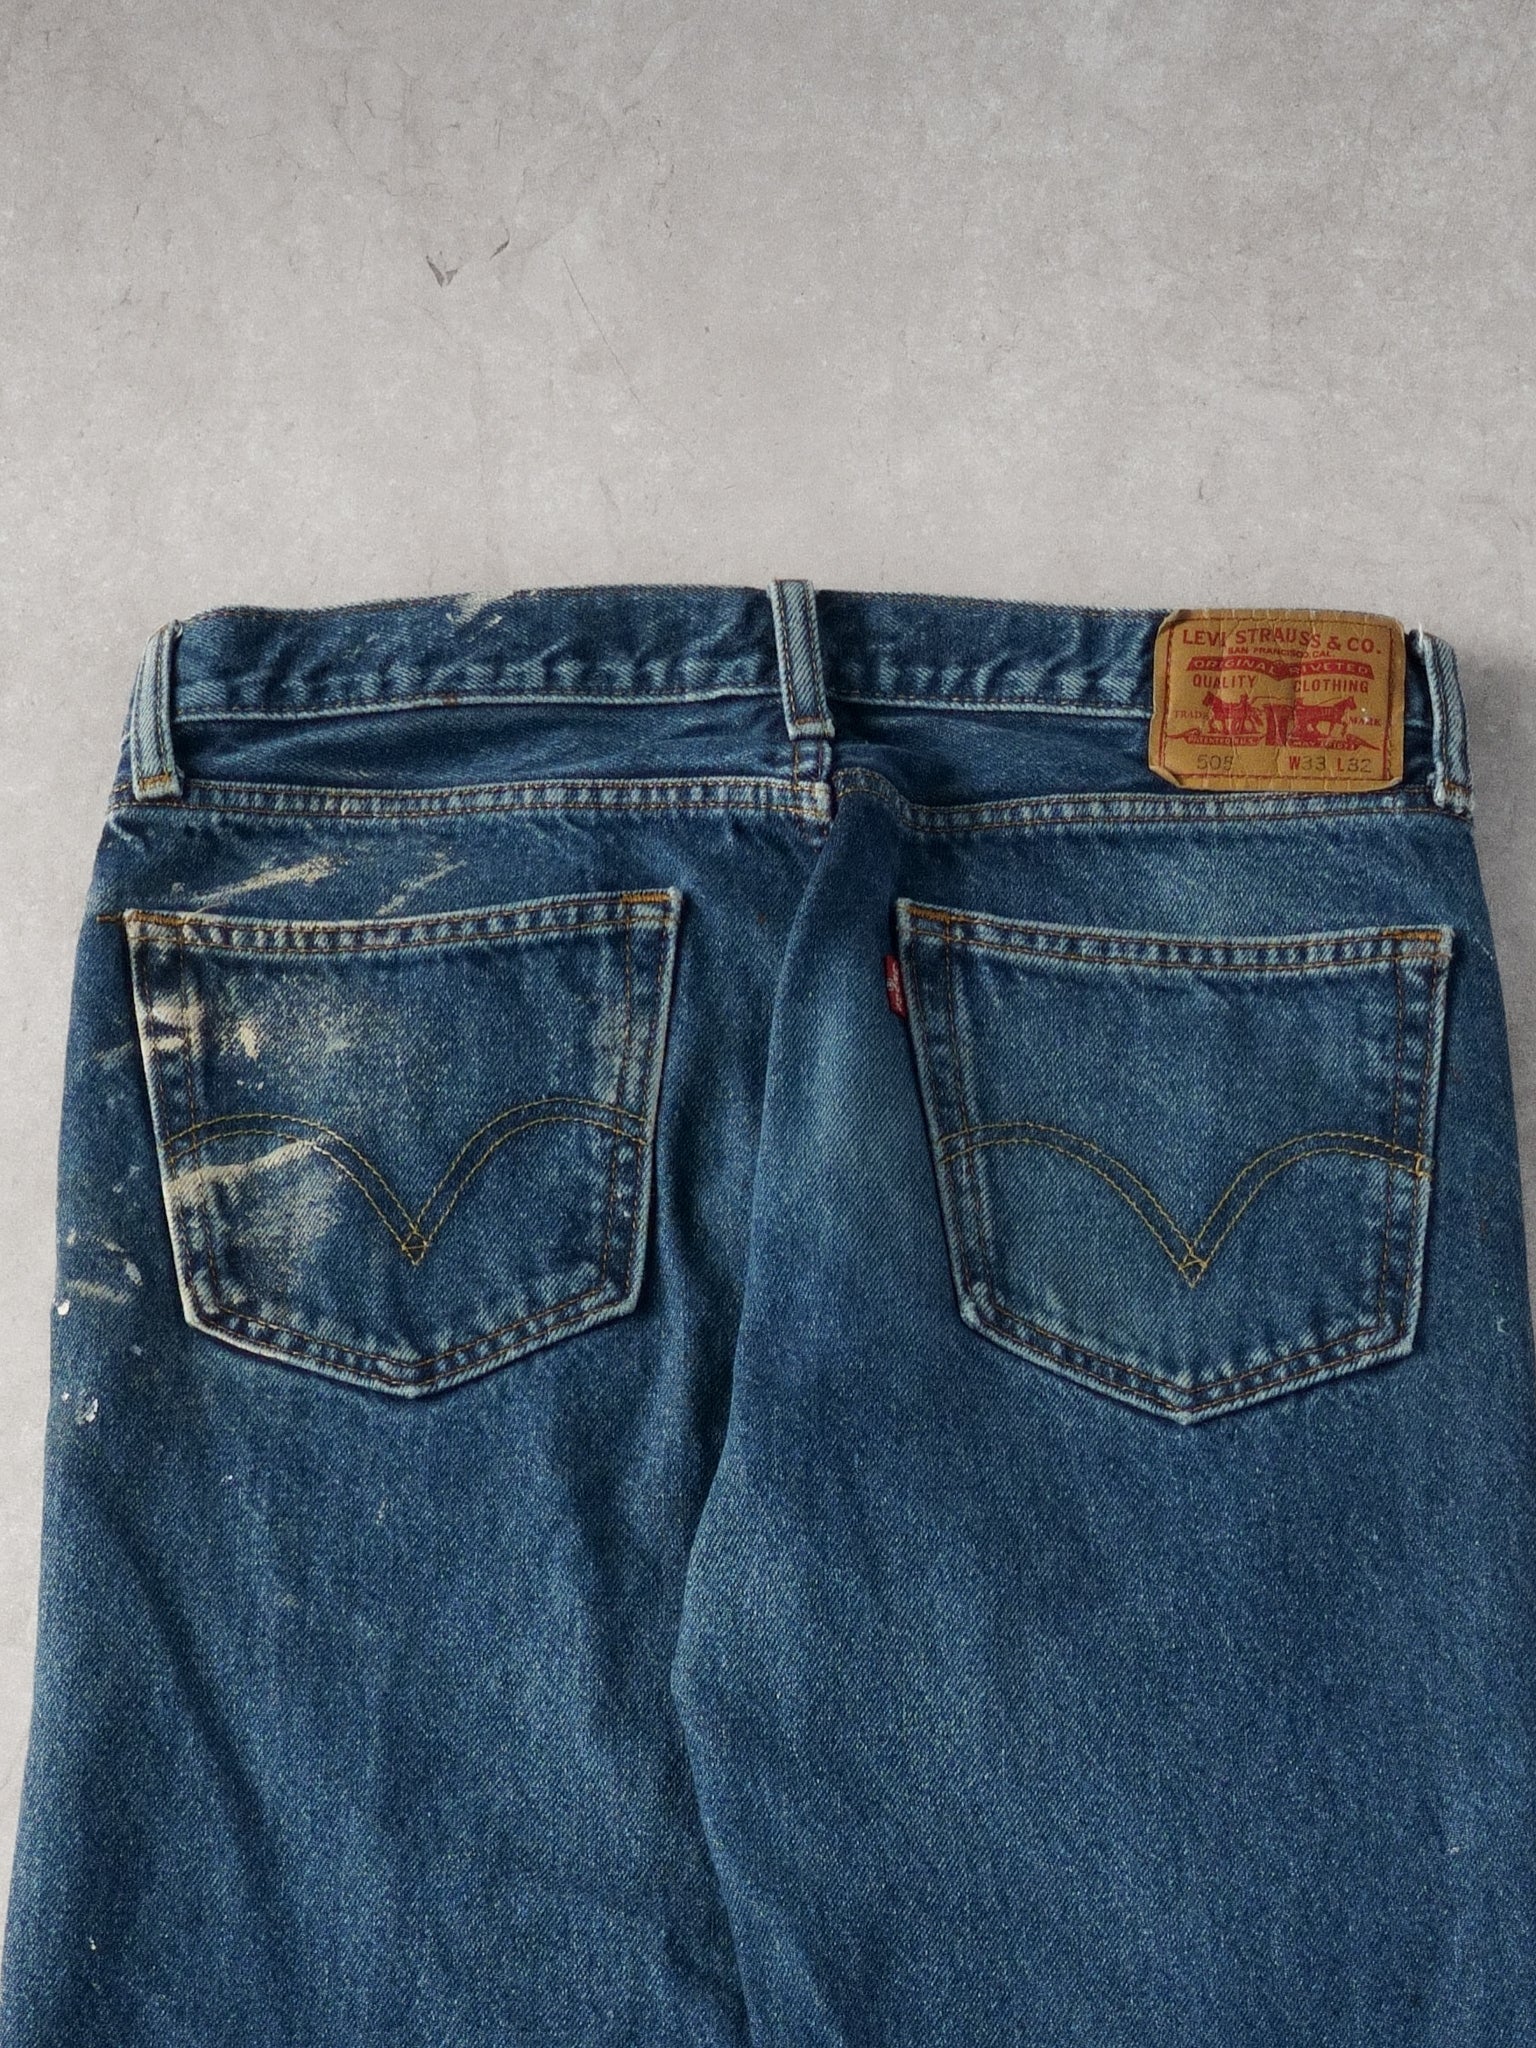 Vintage 90s Blue Levi's 505 Denim Jeans (33x32)